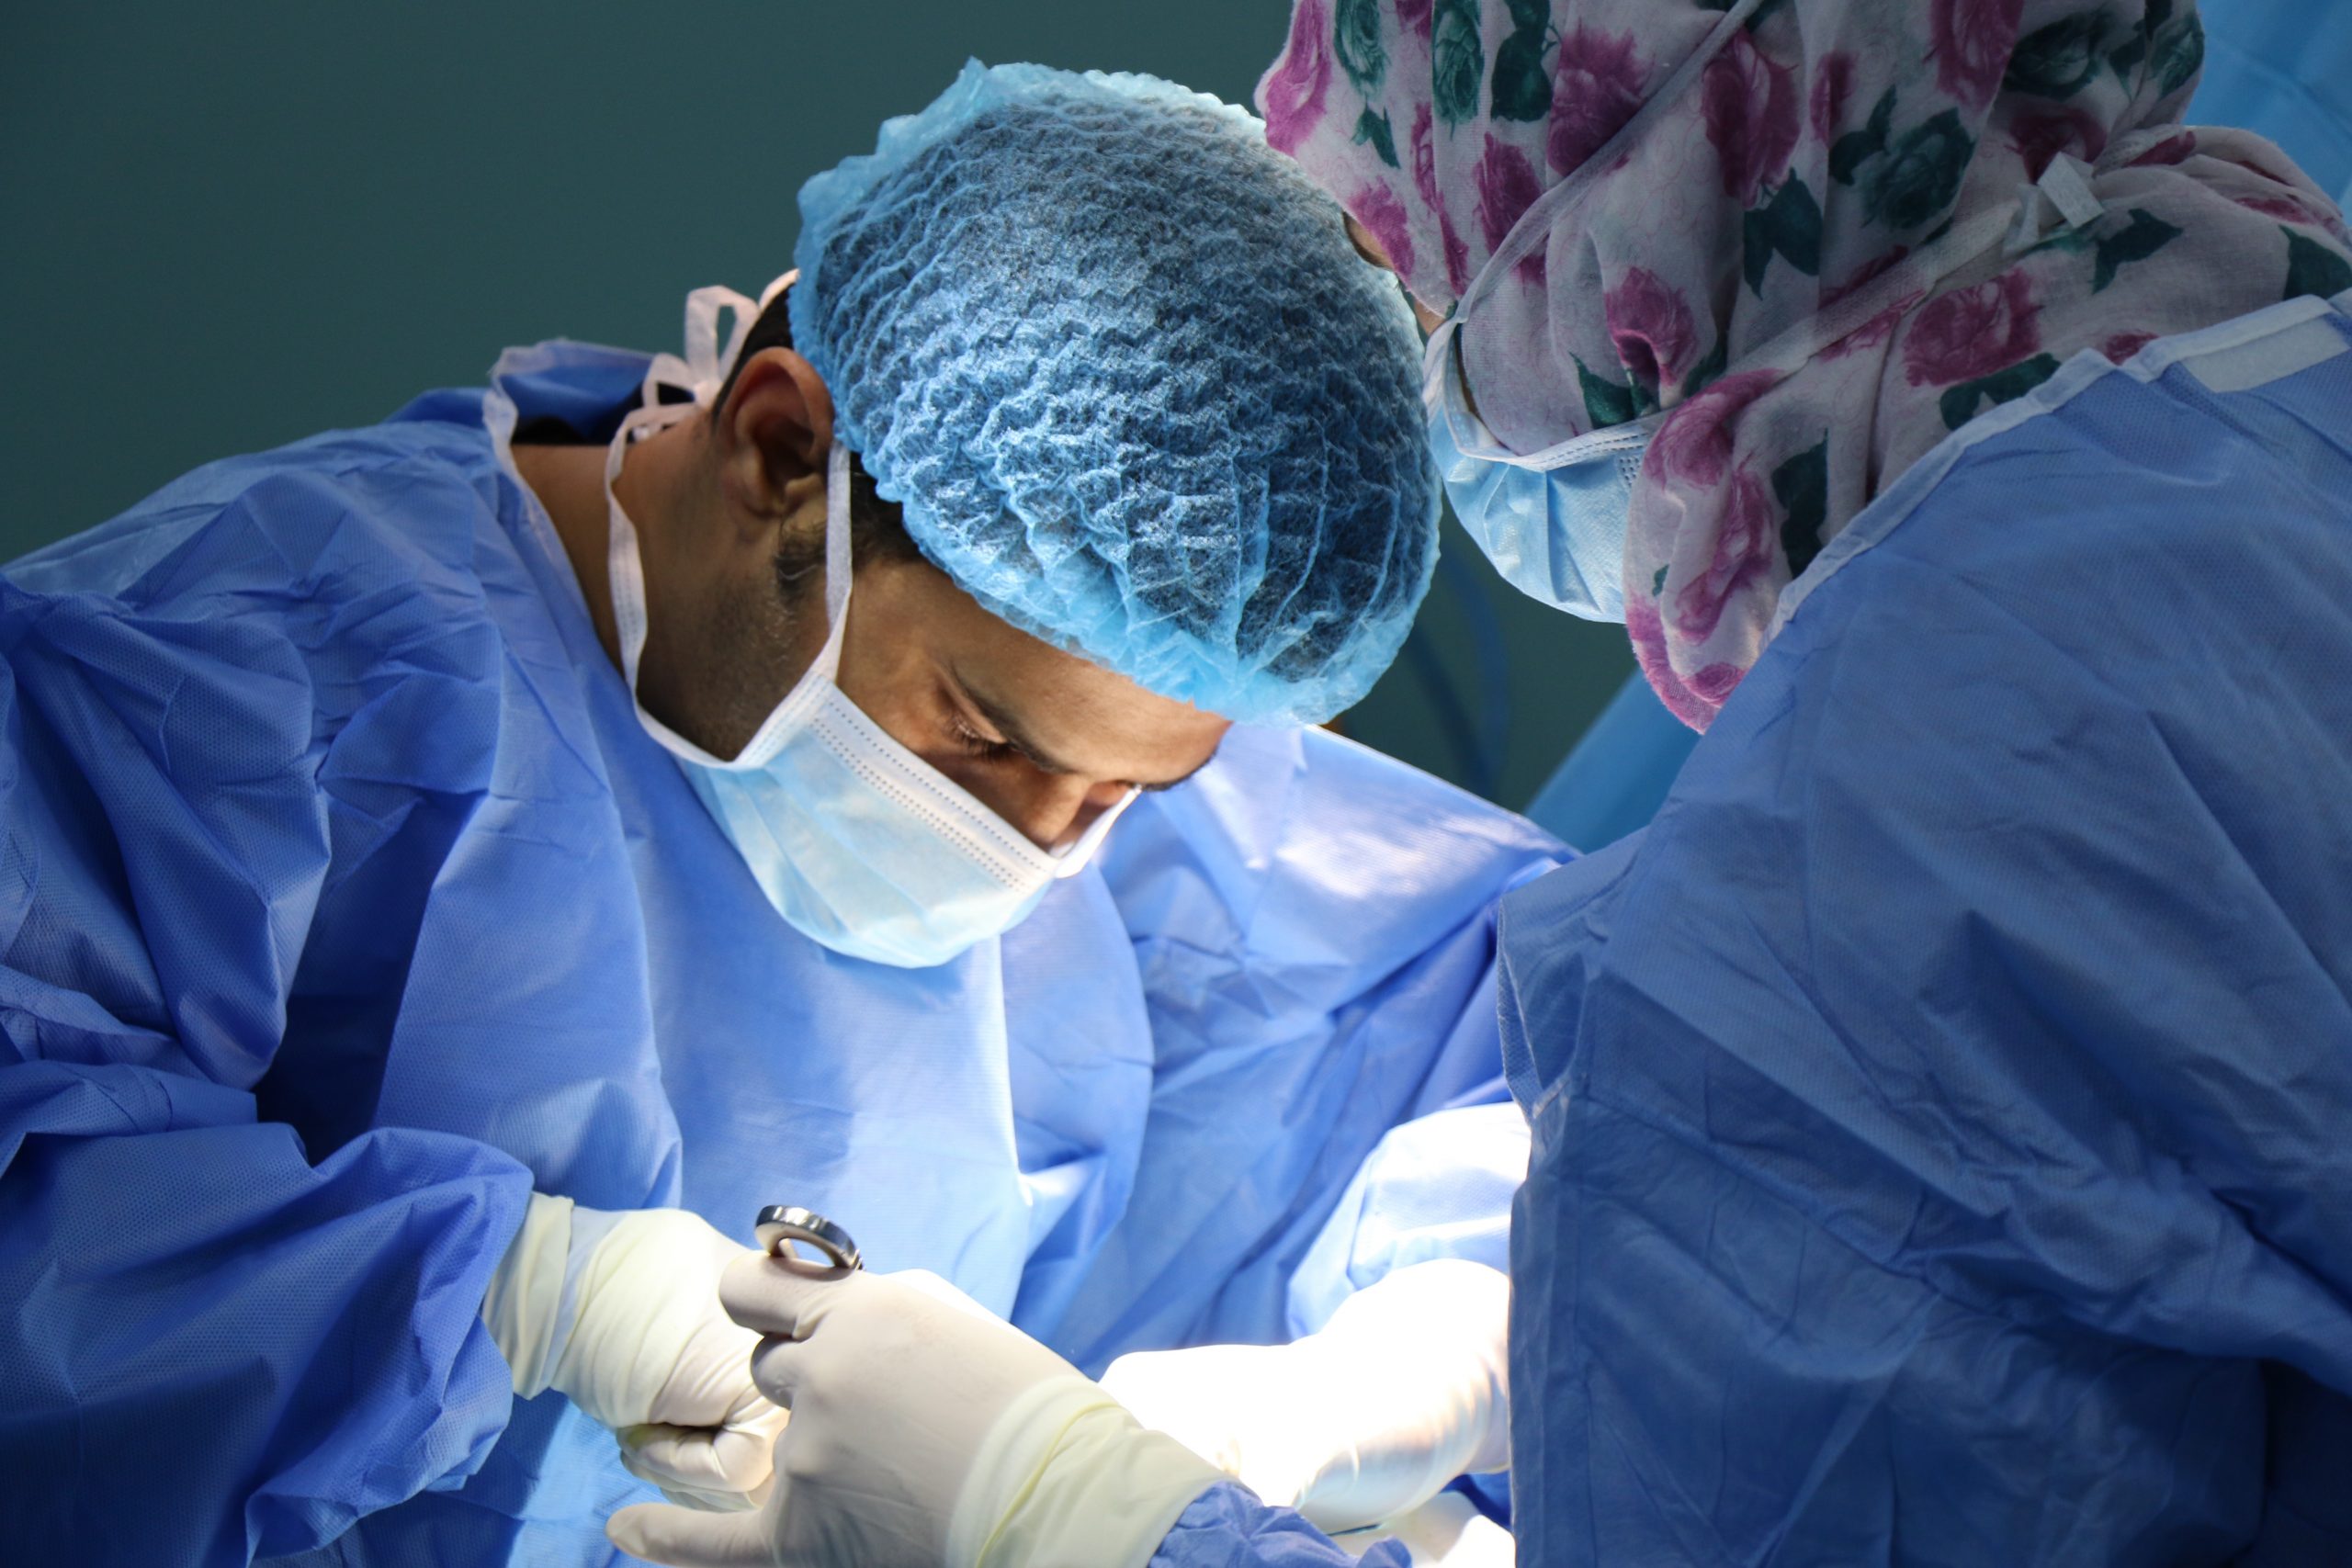 Mohla by xenotransplantácia zachraňovať ľudské životy?